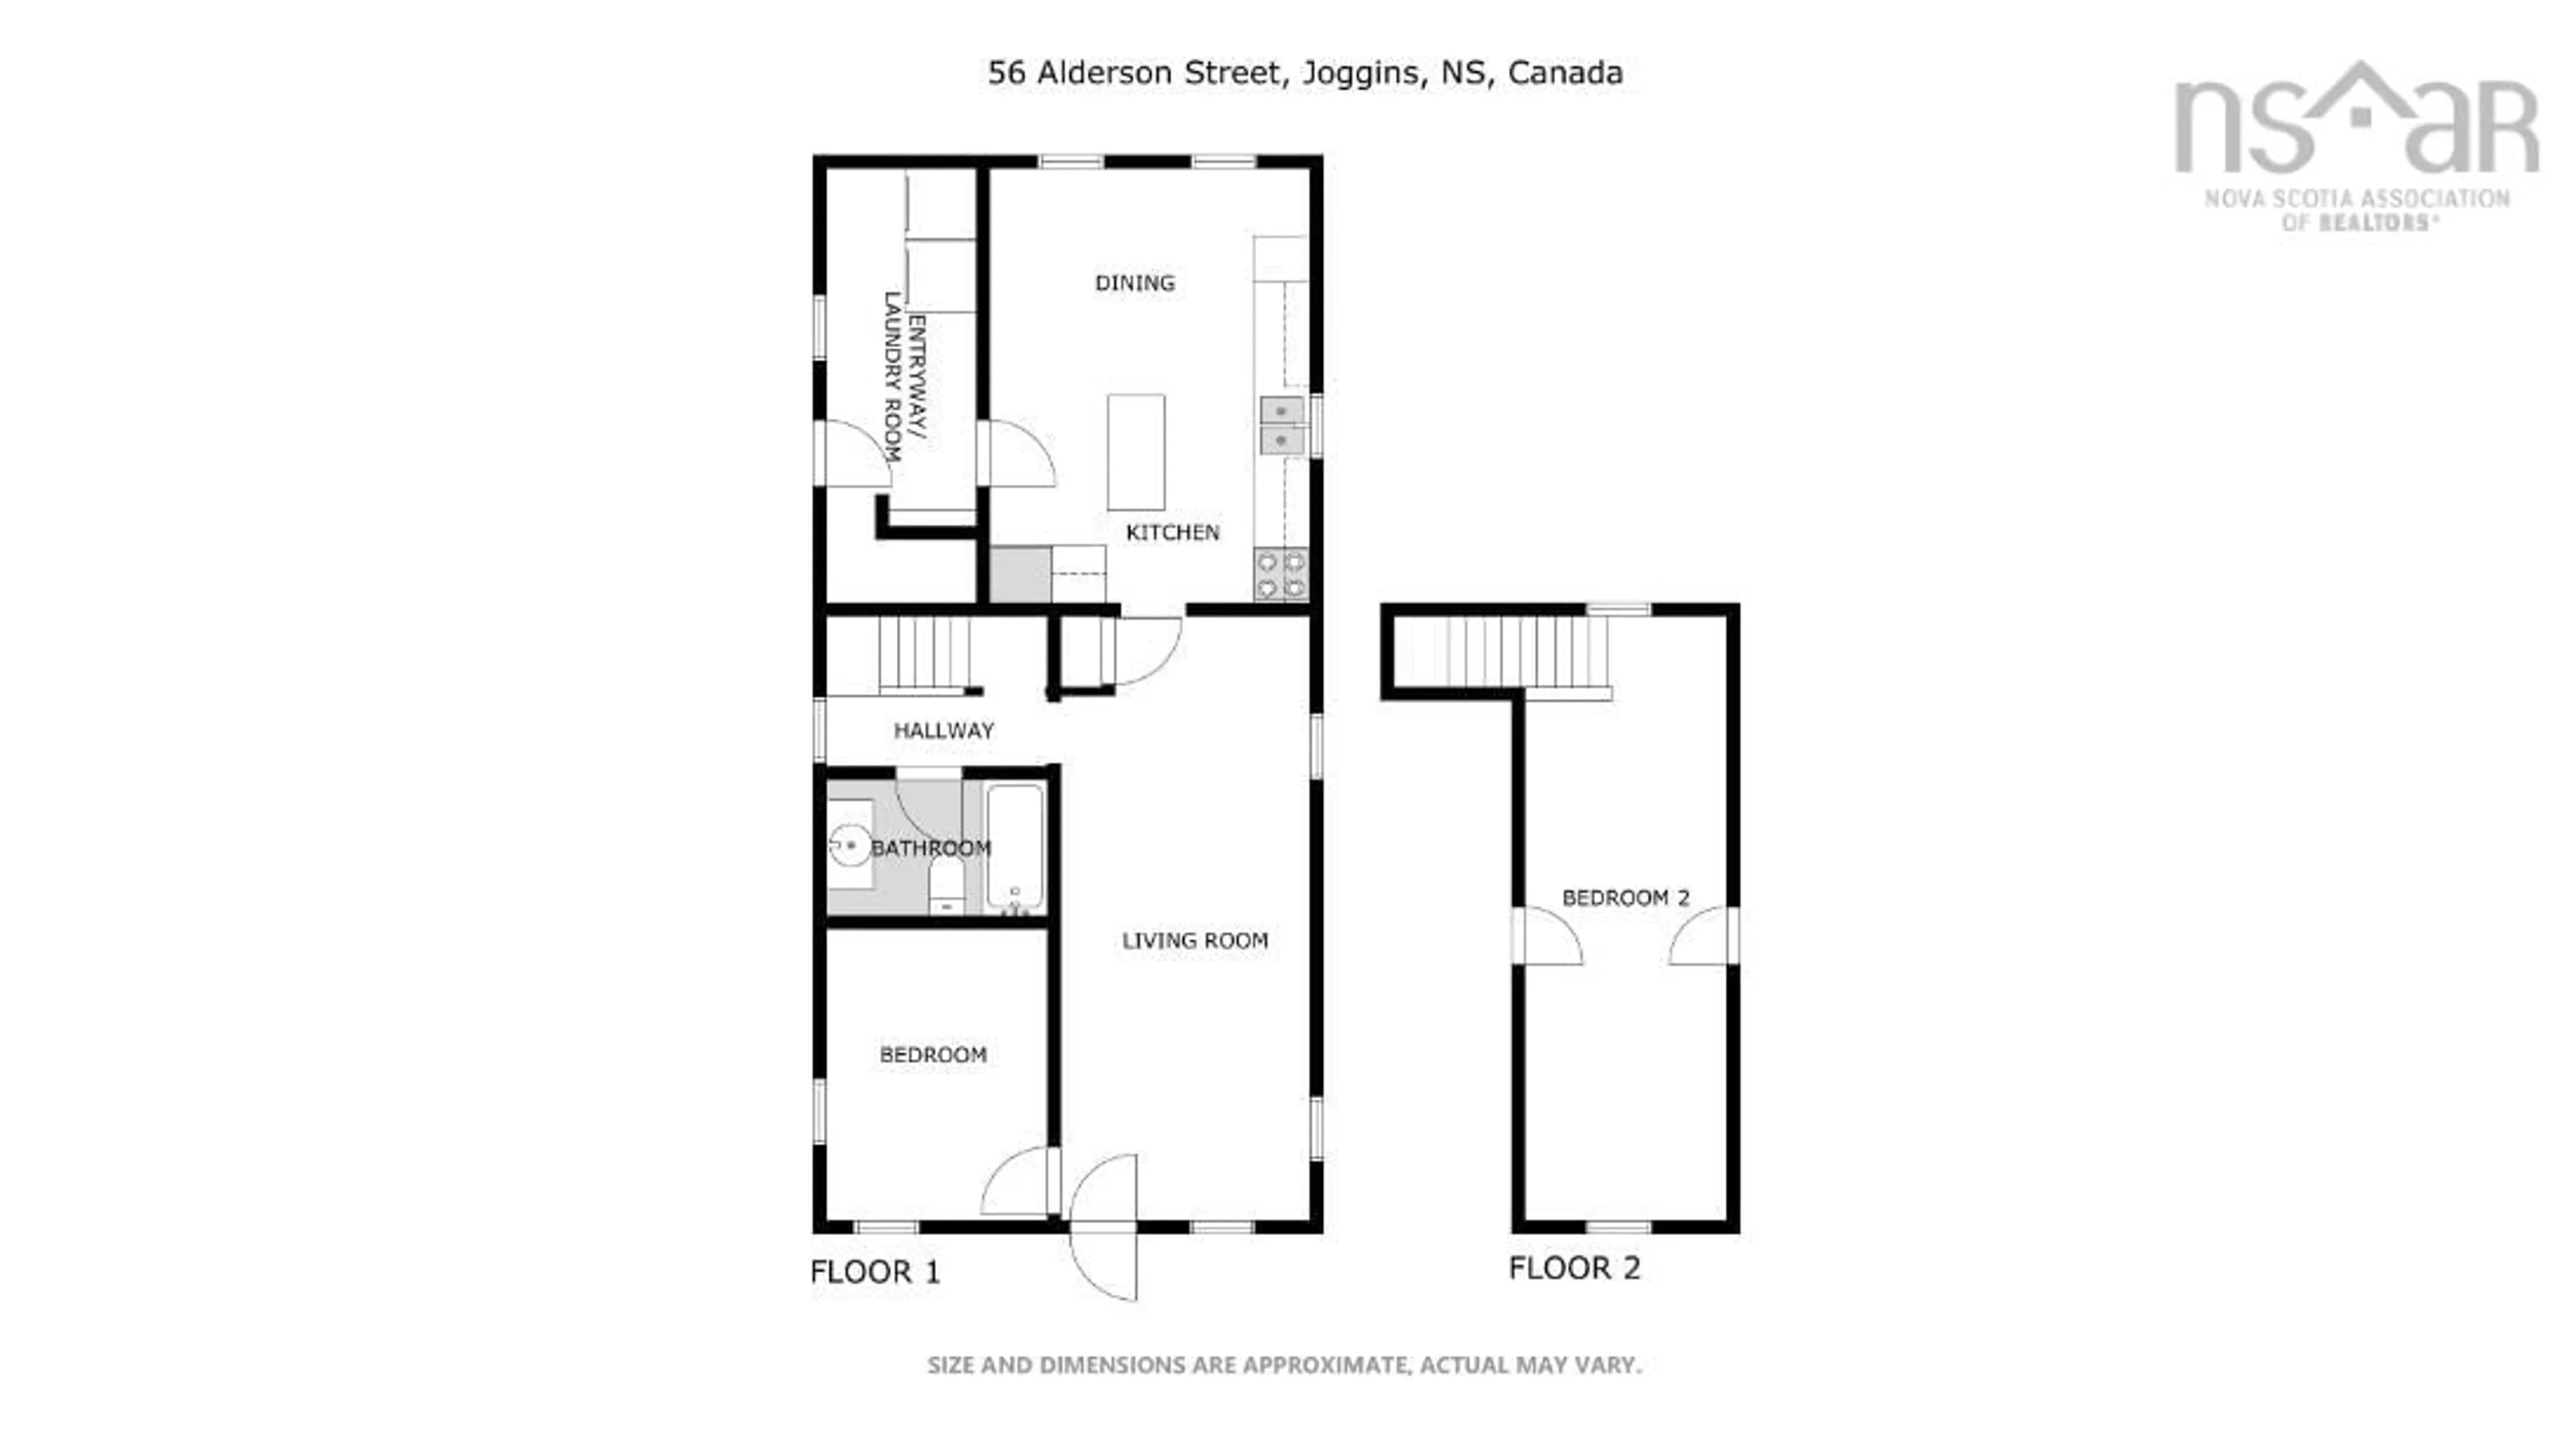 Floor plan for 56 Alderson St, Joggins Nova Scotia B0L 1A0